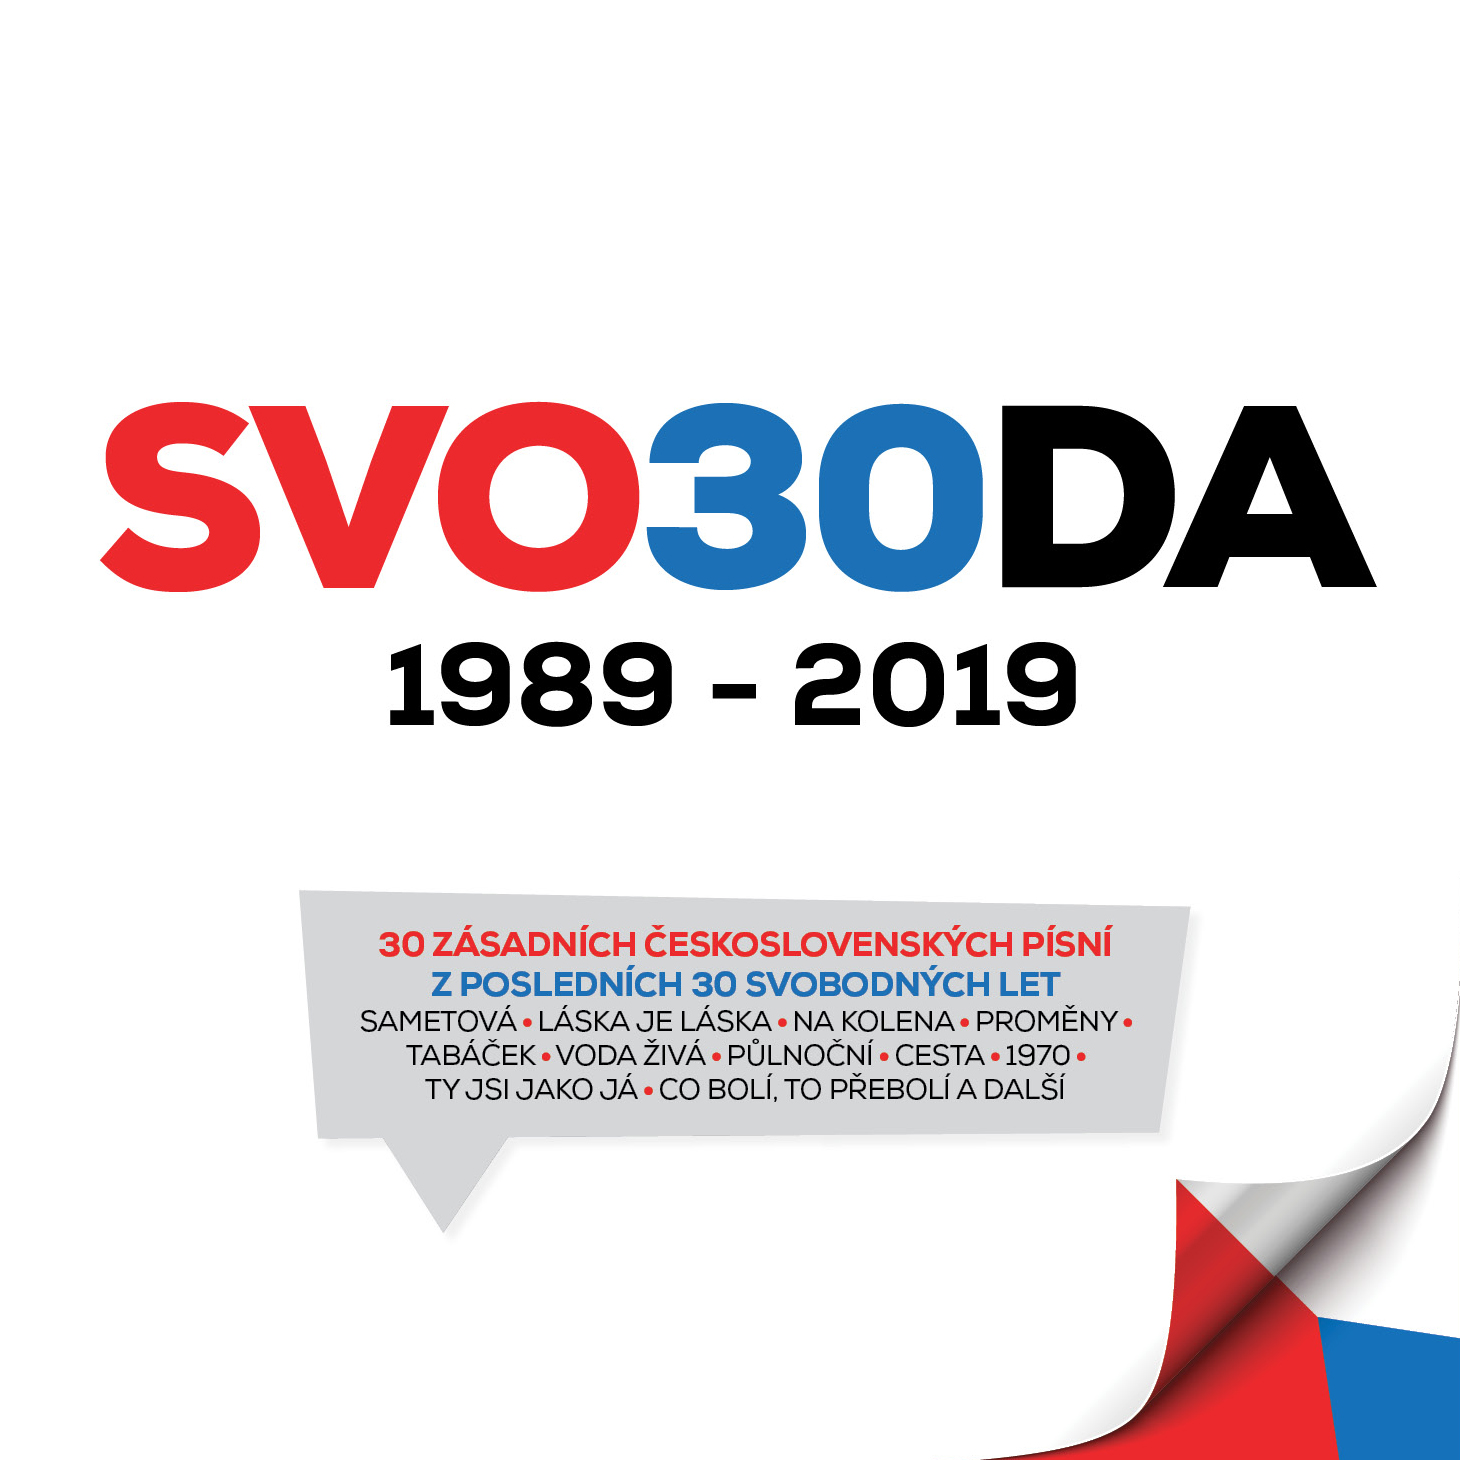 CD Shop - RUZNI/POP NATIONAL SVO30DA 1989-2019